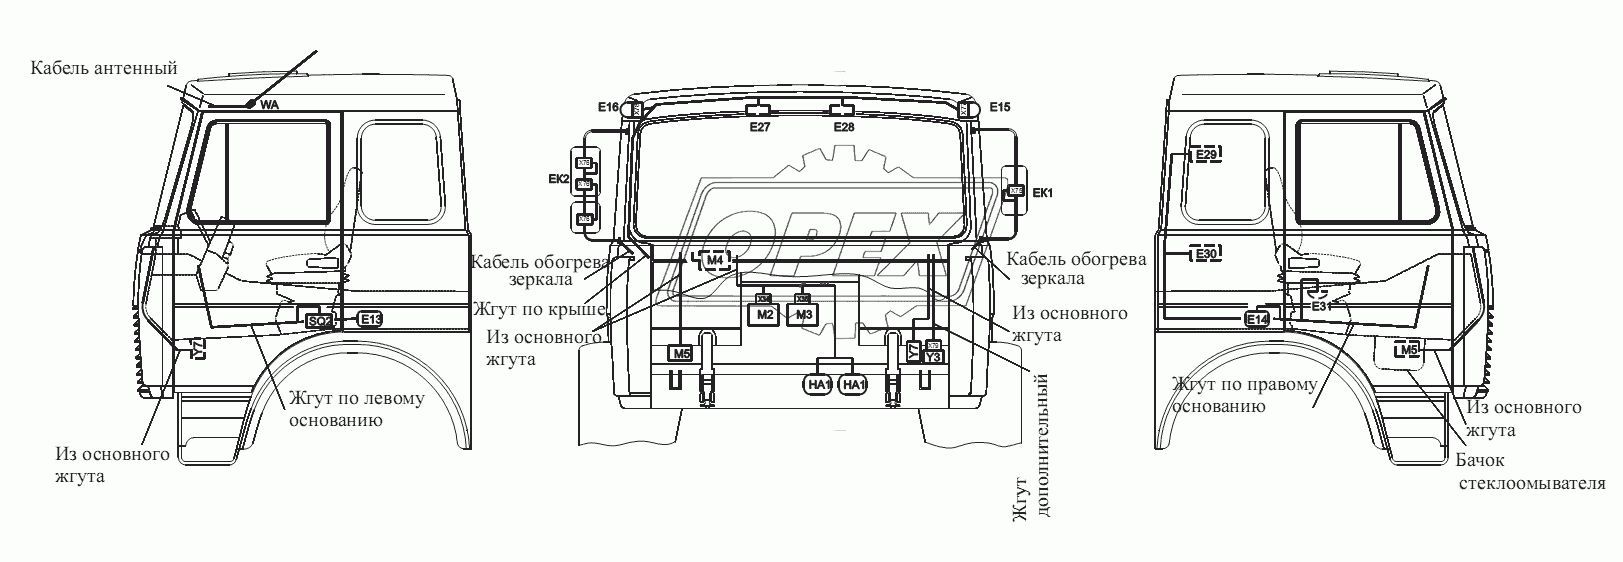 Расположение разъемов и элементов электрооборудования на большой кабине автомобилей-самосвалов с задней разгрузкой и самосвальных шасси